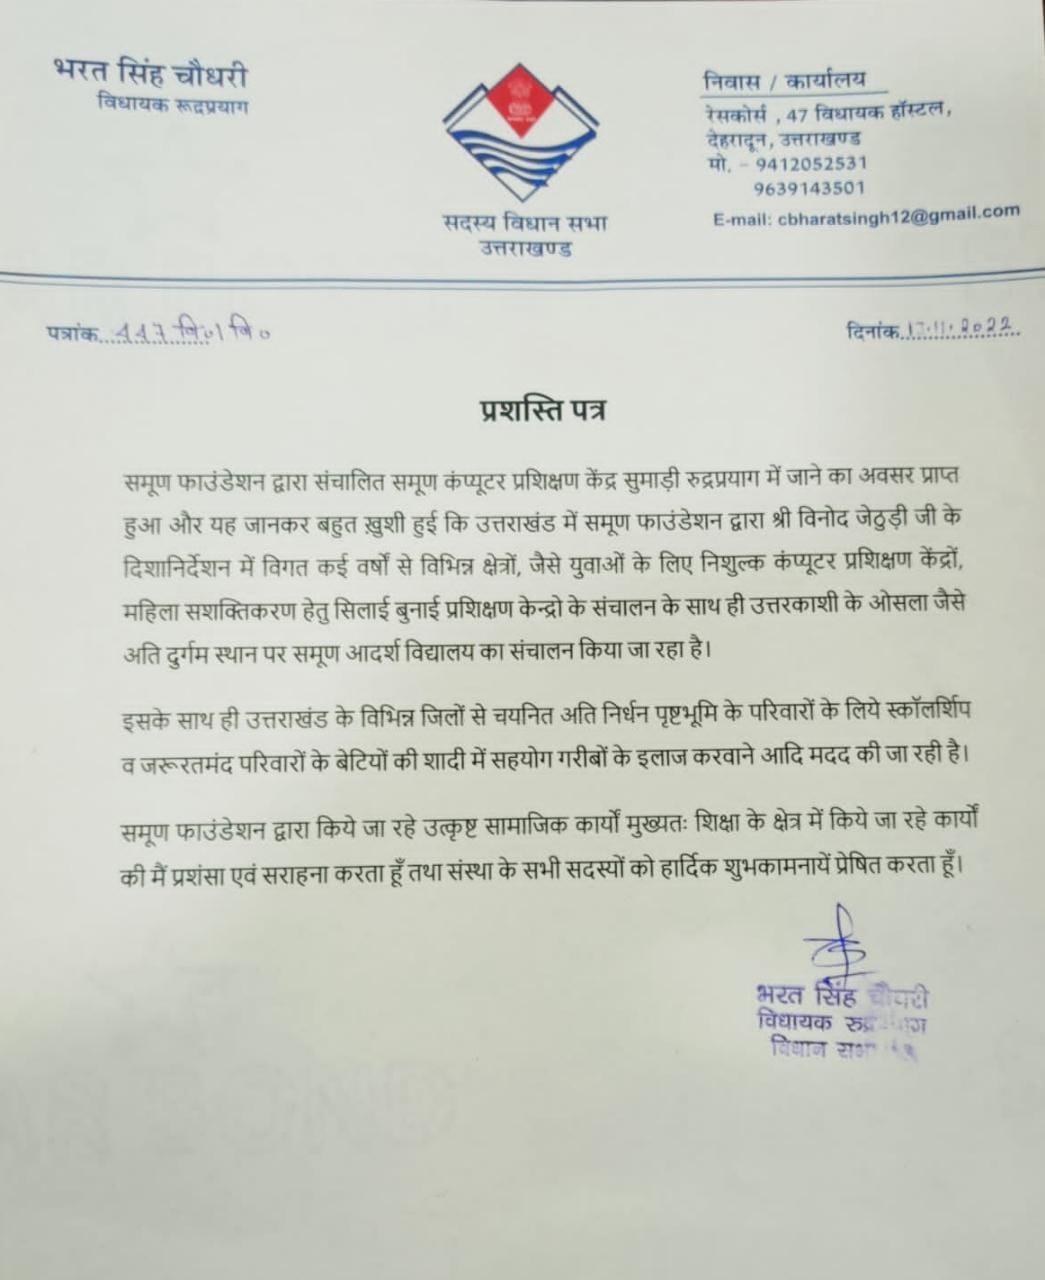 Appreciation letter from Bharat singh chaudhari  - MLA Rudrapriyag 